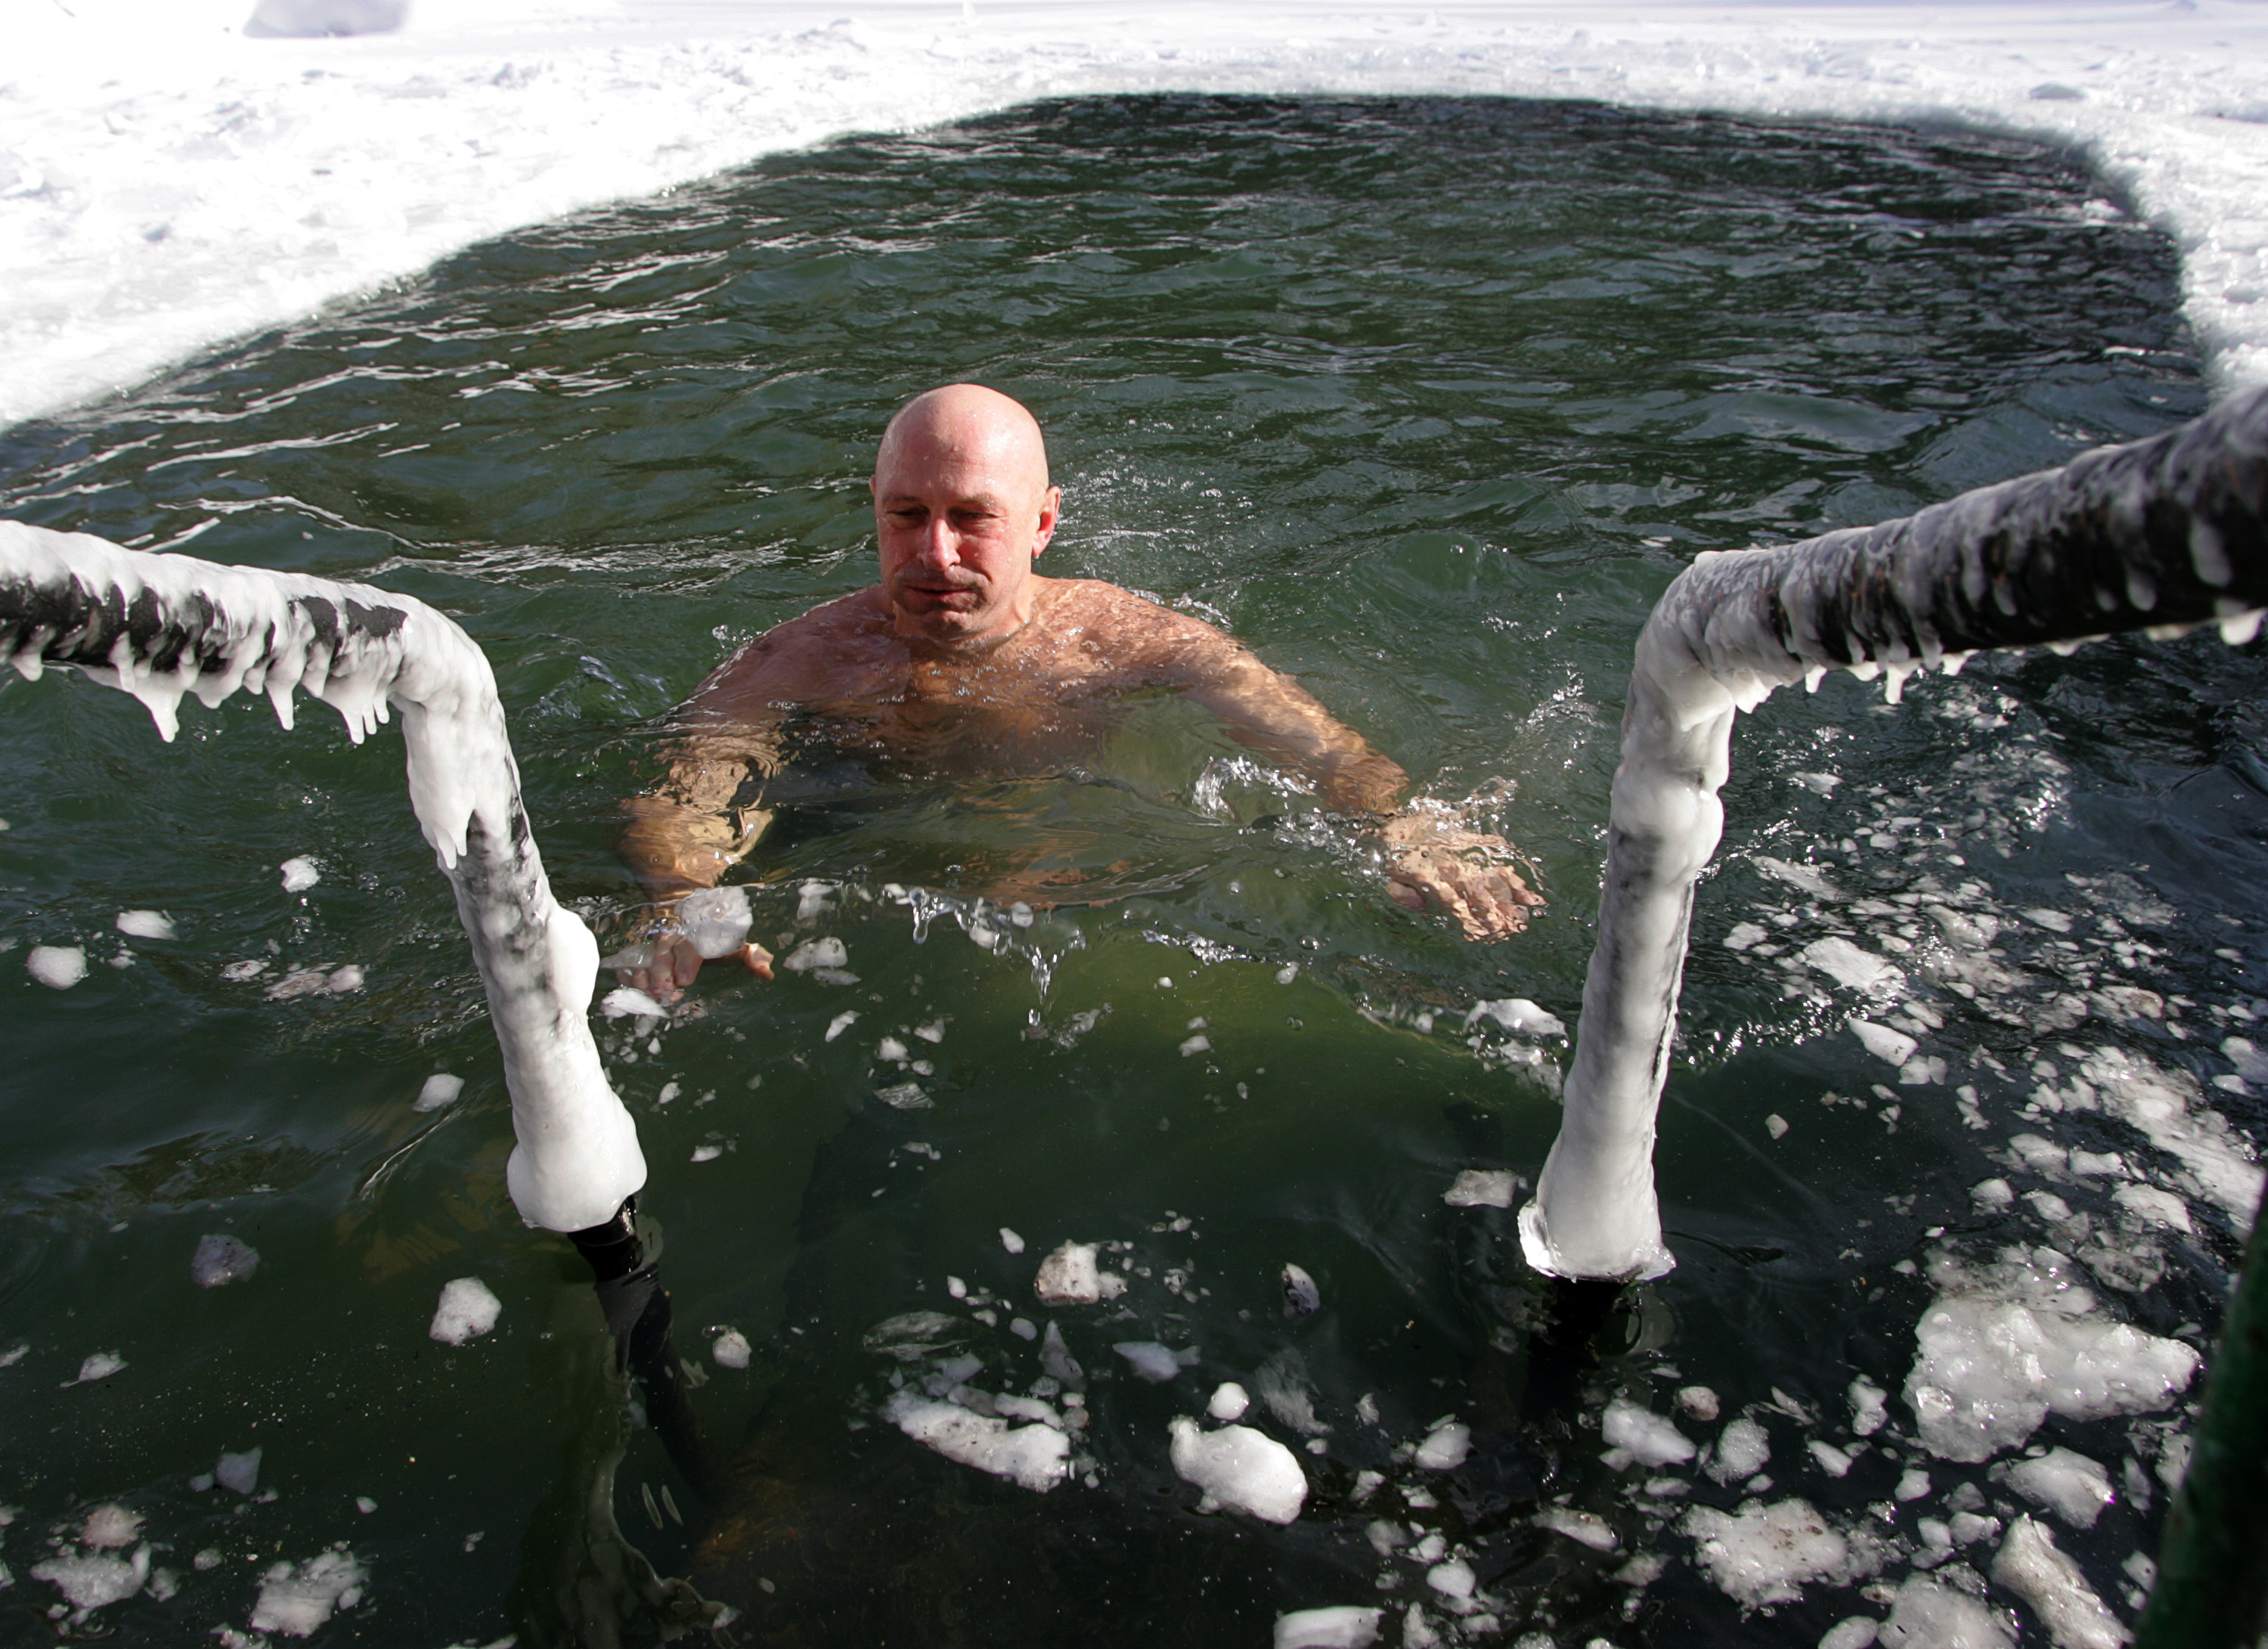 Hipócrates creía que la terapia acuática podía aliviar la fatiga, y los médicos del siglo XVIII recomendaban los baños fríos para tratar afecciones como la fiebre y el raquitismo  (Photo by Dima Korotayev/Epsilon/Getty Images)